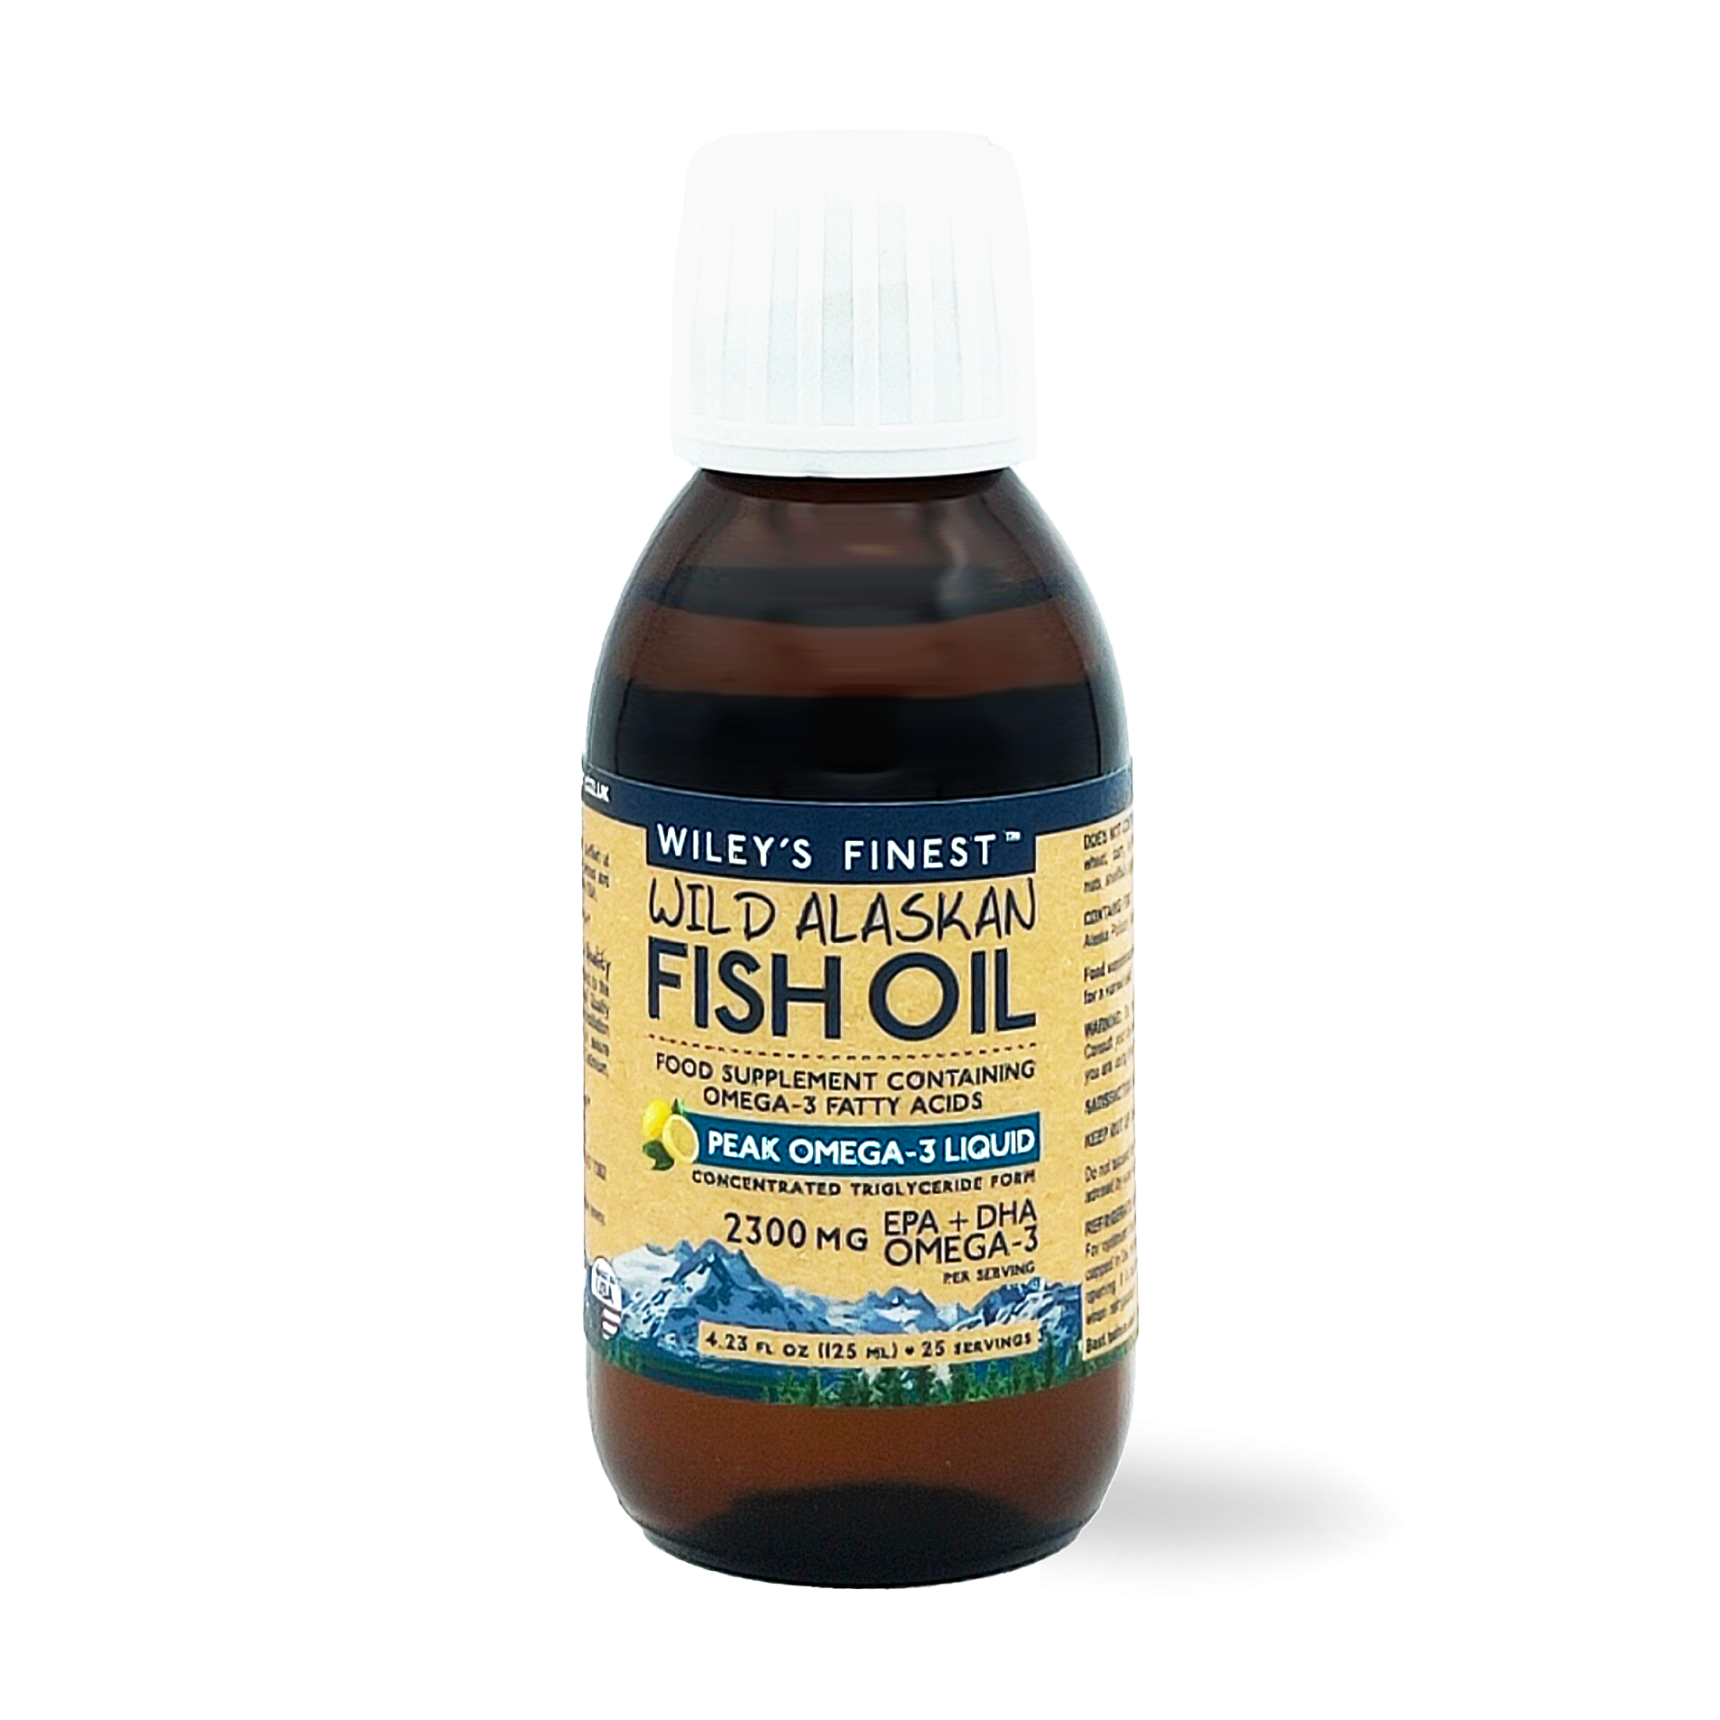 Wild Alaskan Fish Oil Peak Omega 3 tekočina, 125 ml